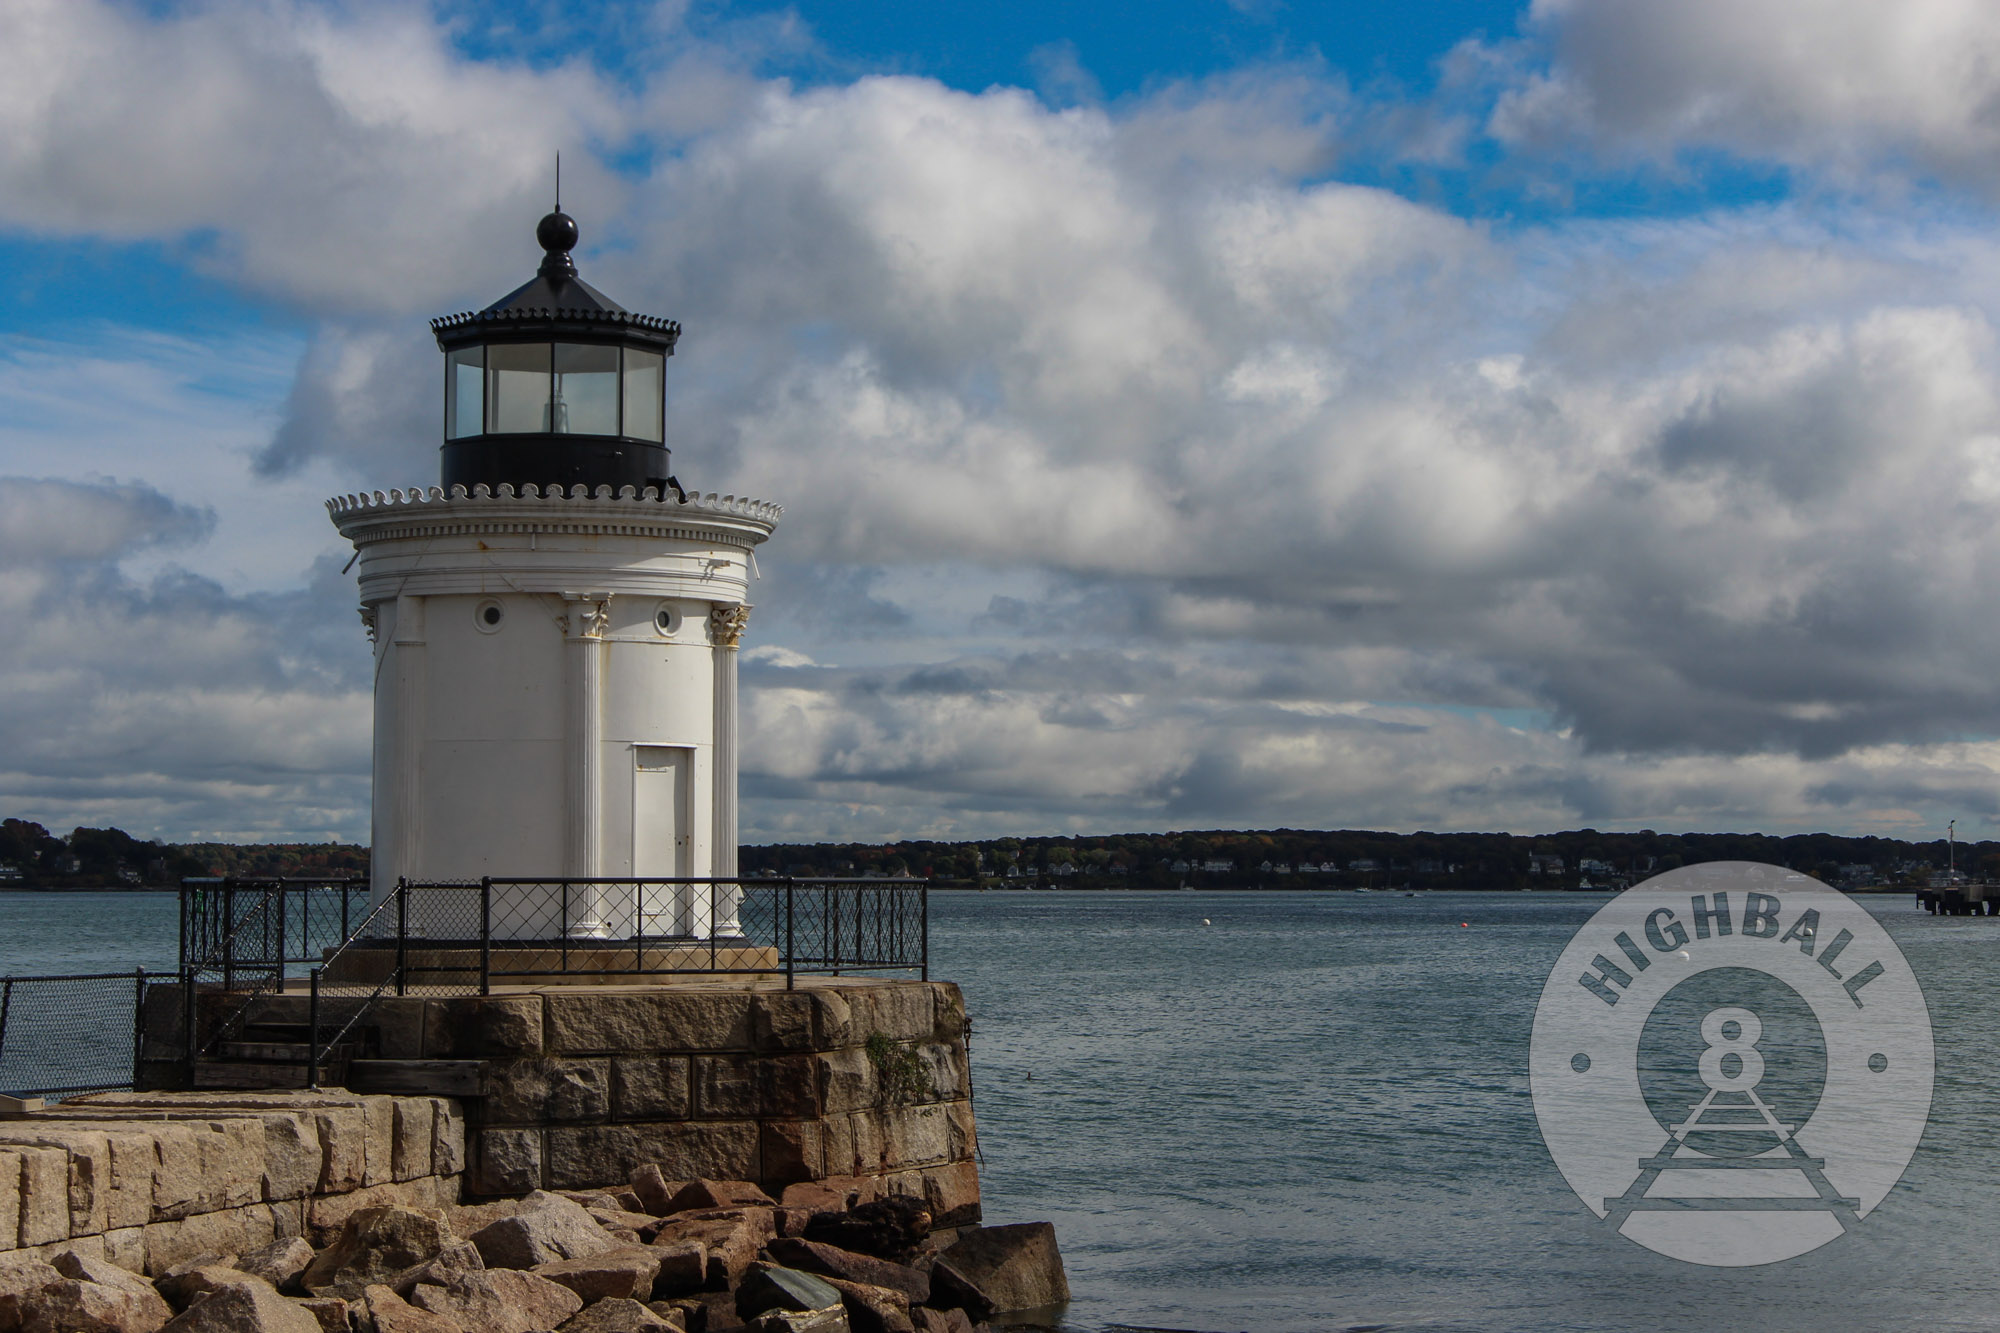 Bug Light Lighthouse, South Portland, Maine, USA, 2014.